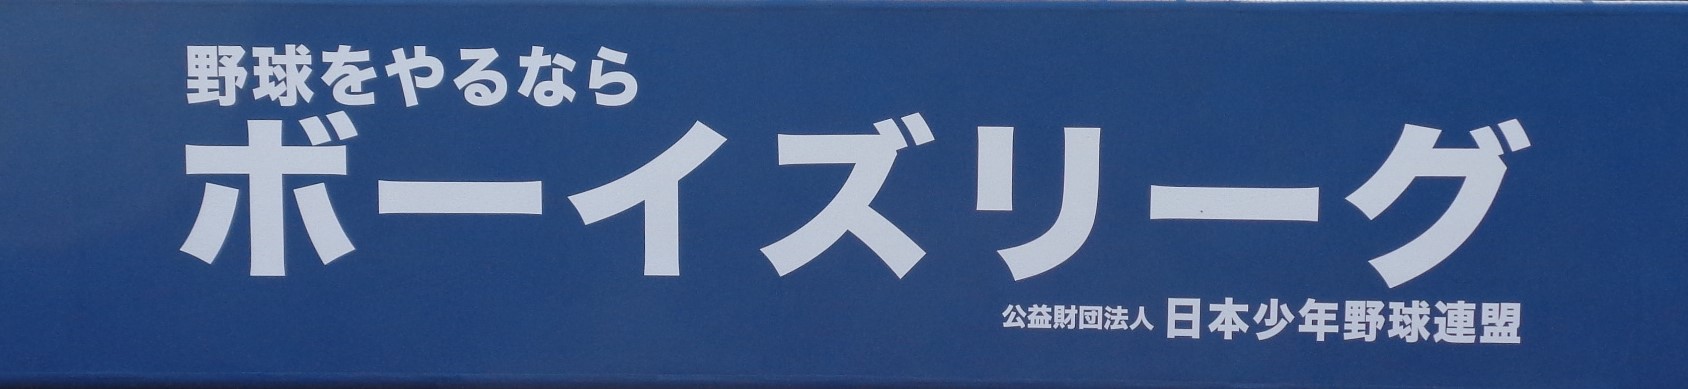 公益財団法人日本少年野球連盟様広告